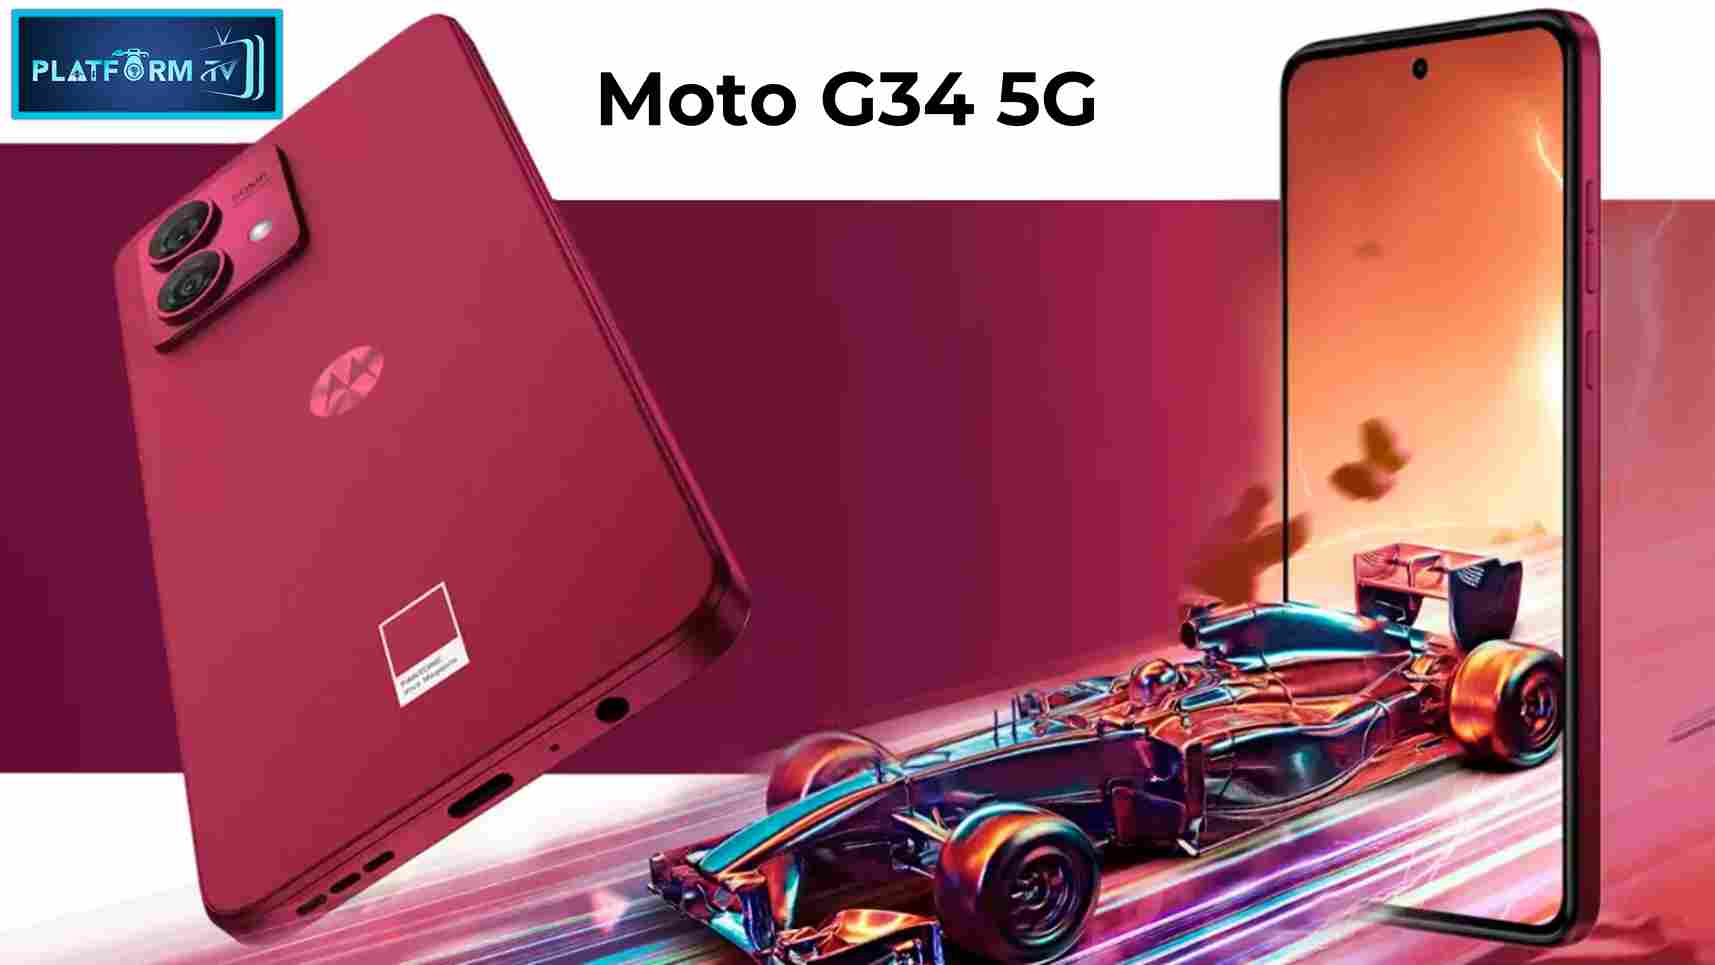 Moto G34 5G - Platform Tamil